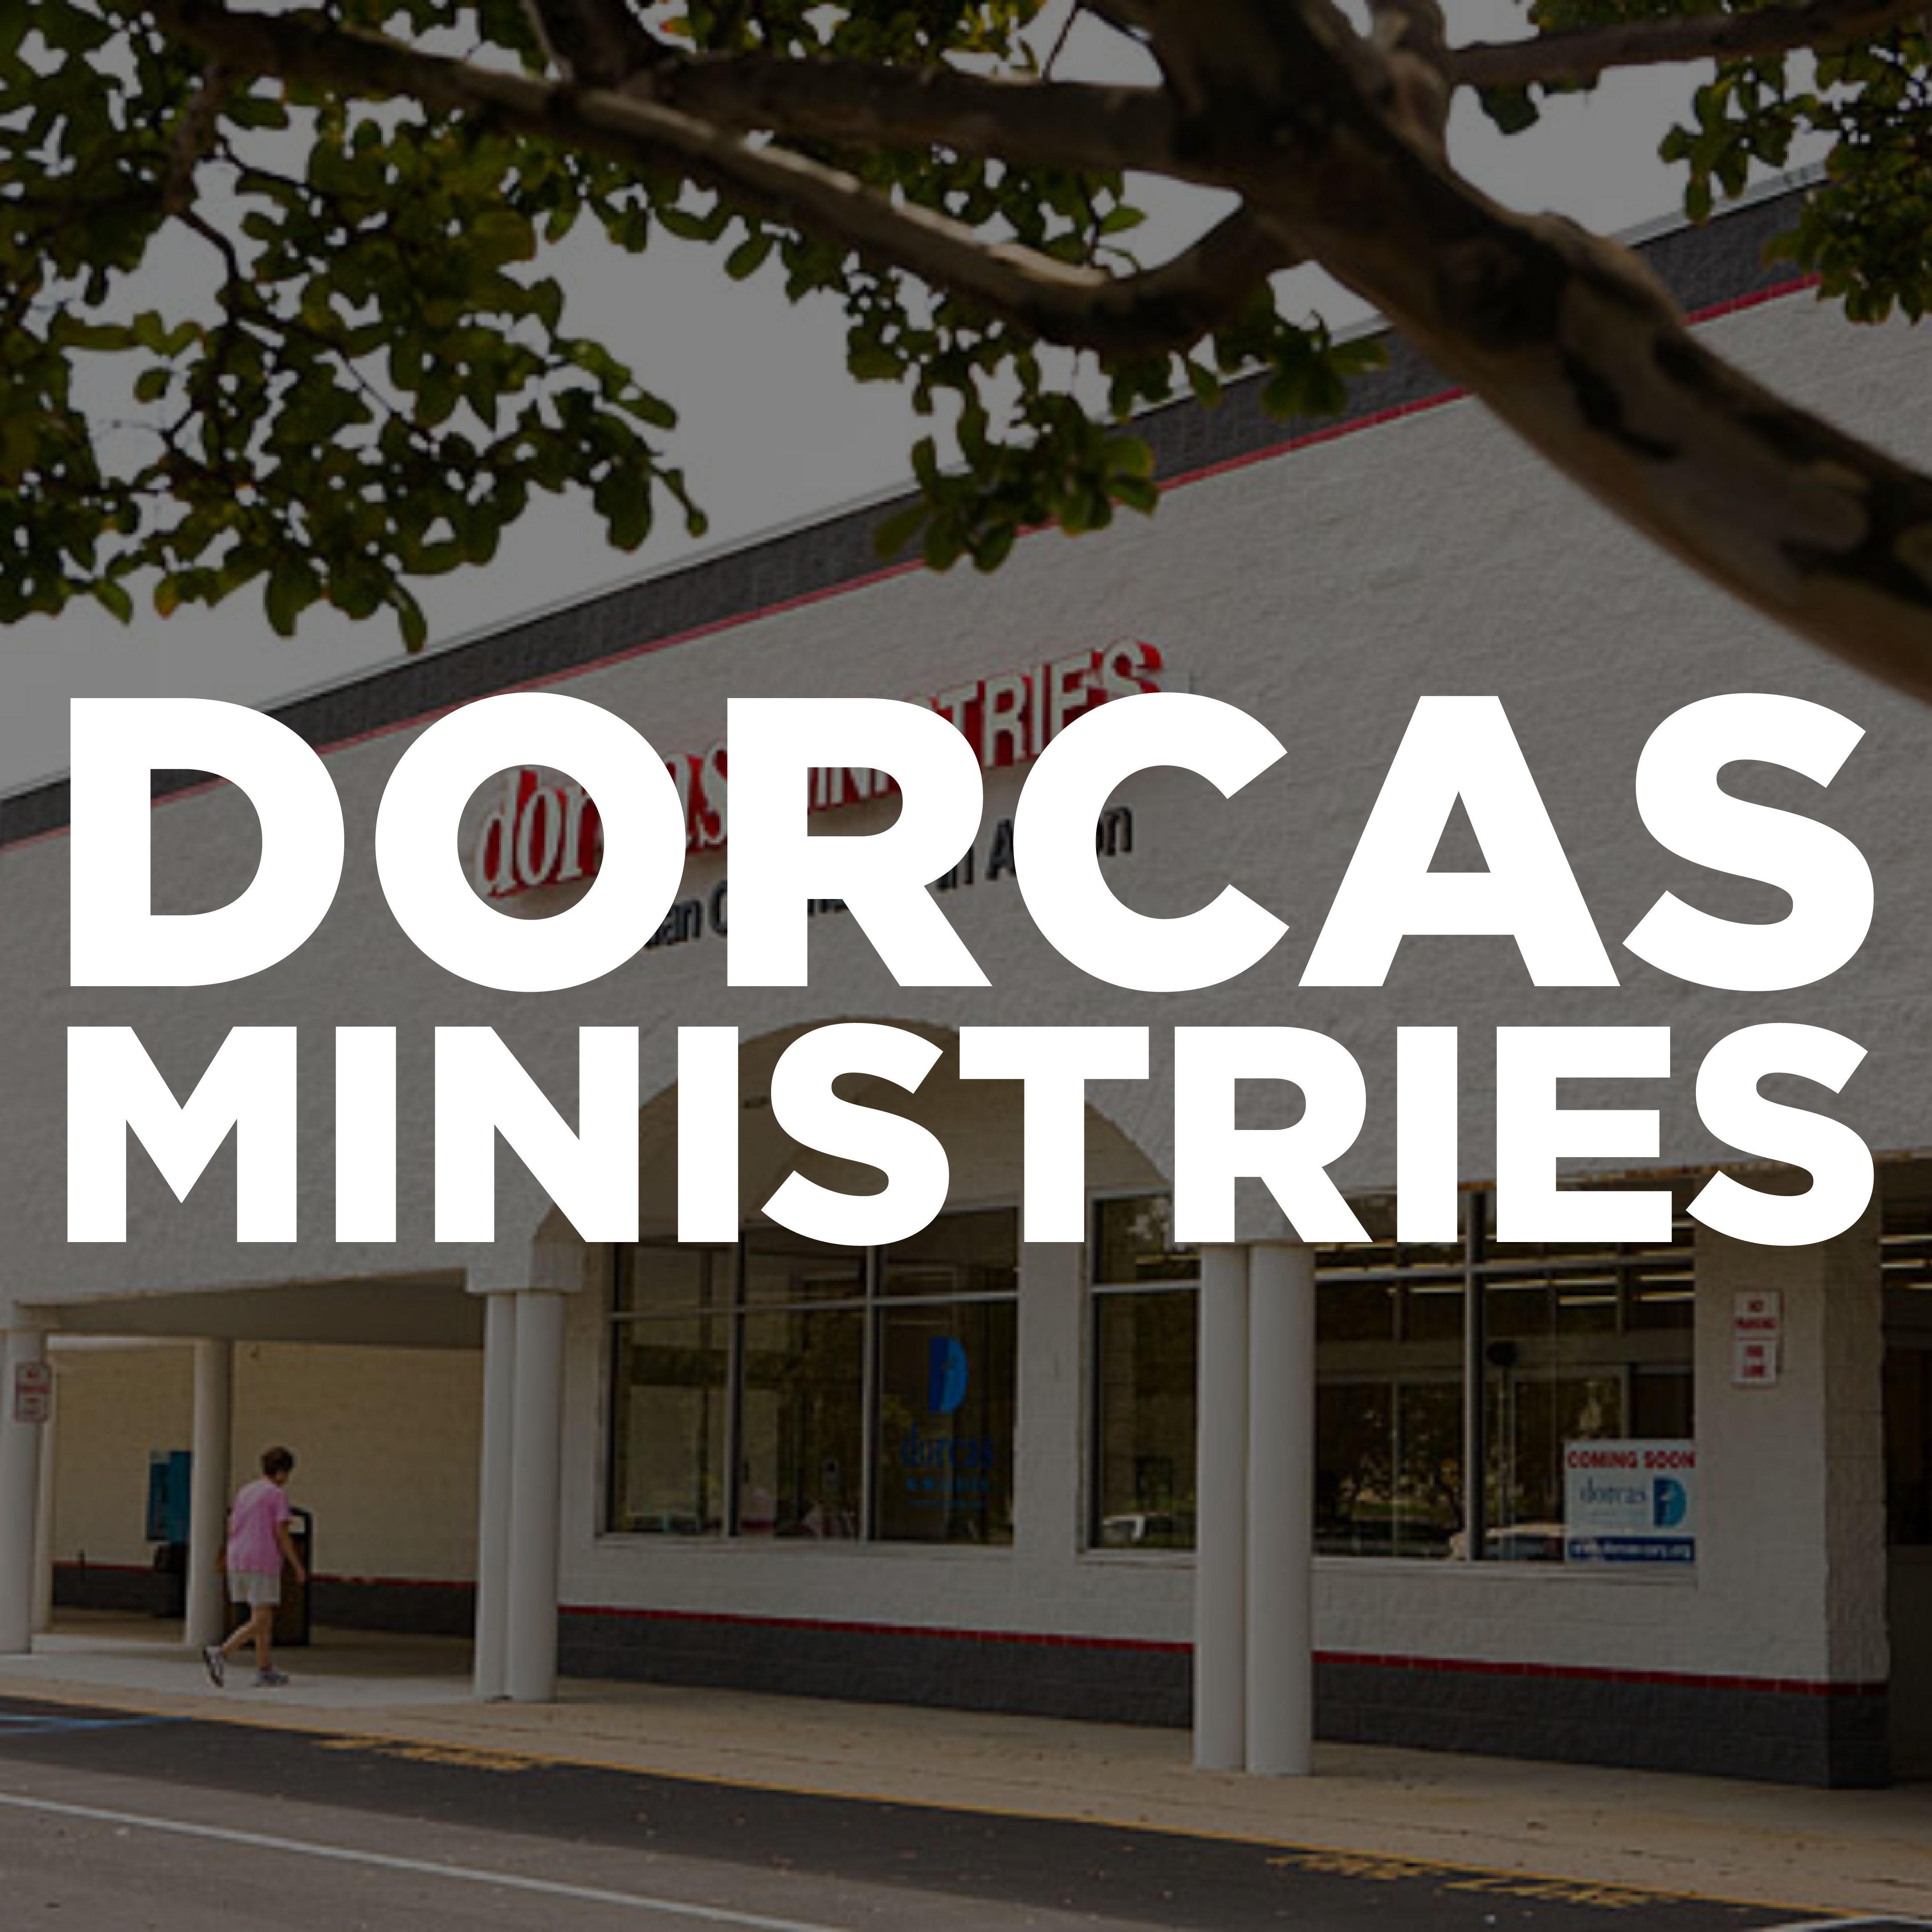 dorcas ministries